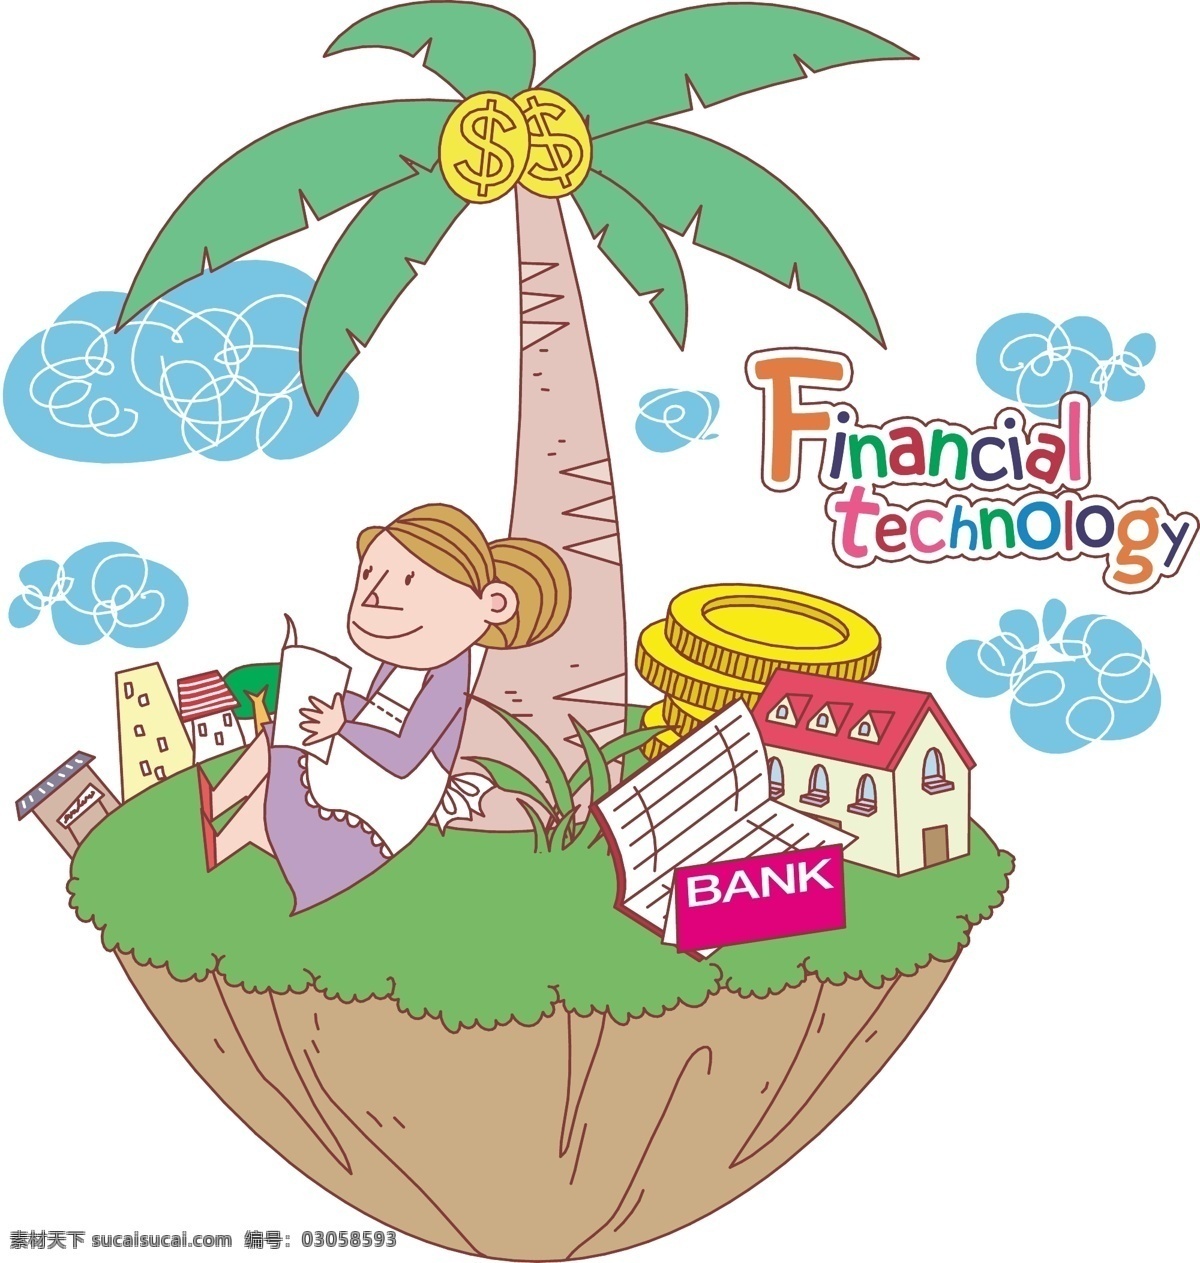 椰子 树下 女孩 房屋 贷款 公积金 金钱 椰子树 学习 存折 漫画 卡通 卡通形象 矢量人物 矢量素材 白色